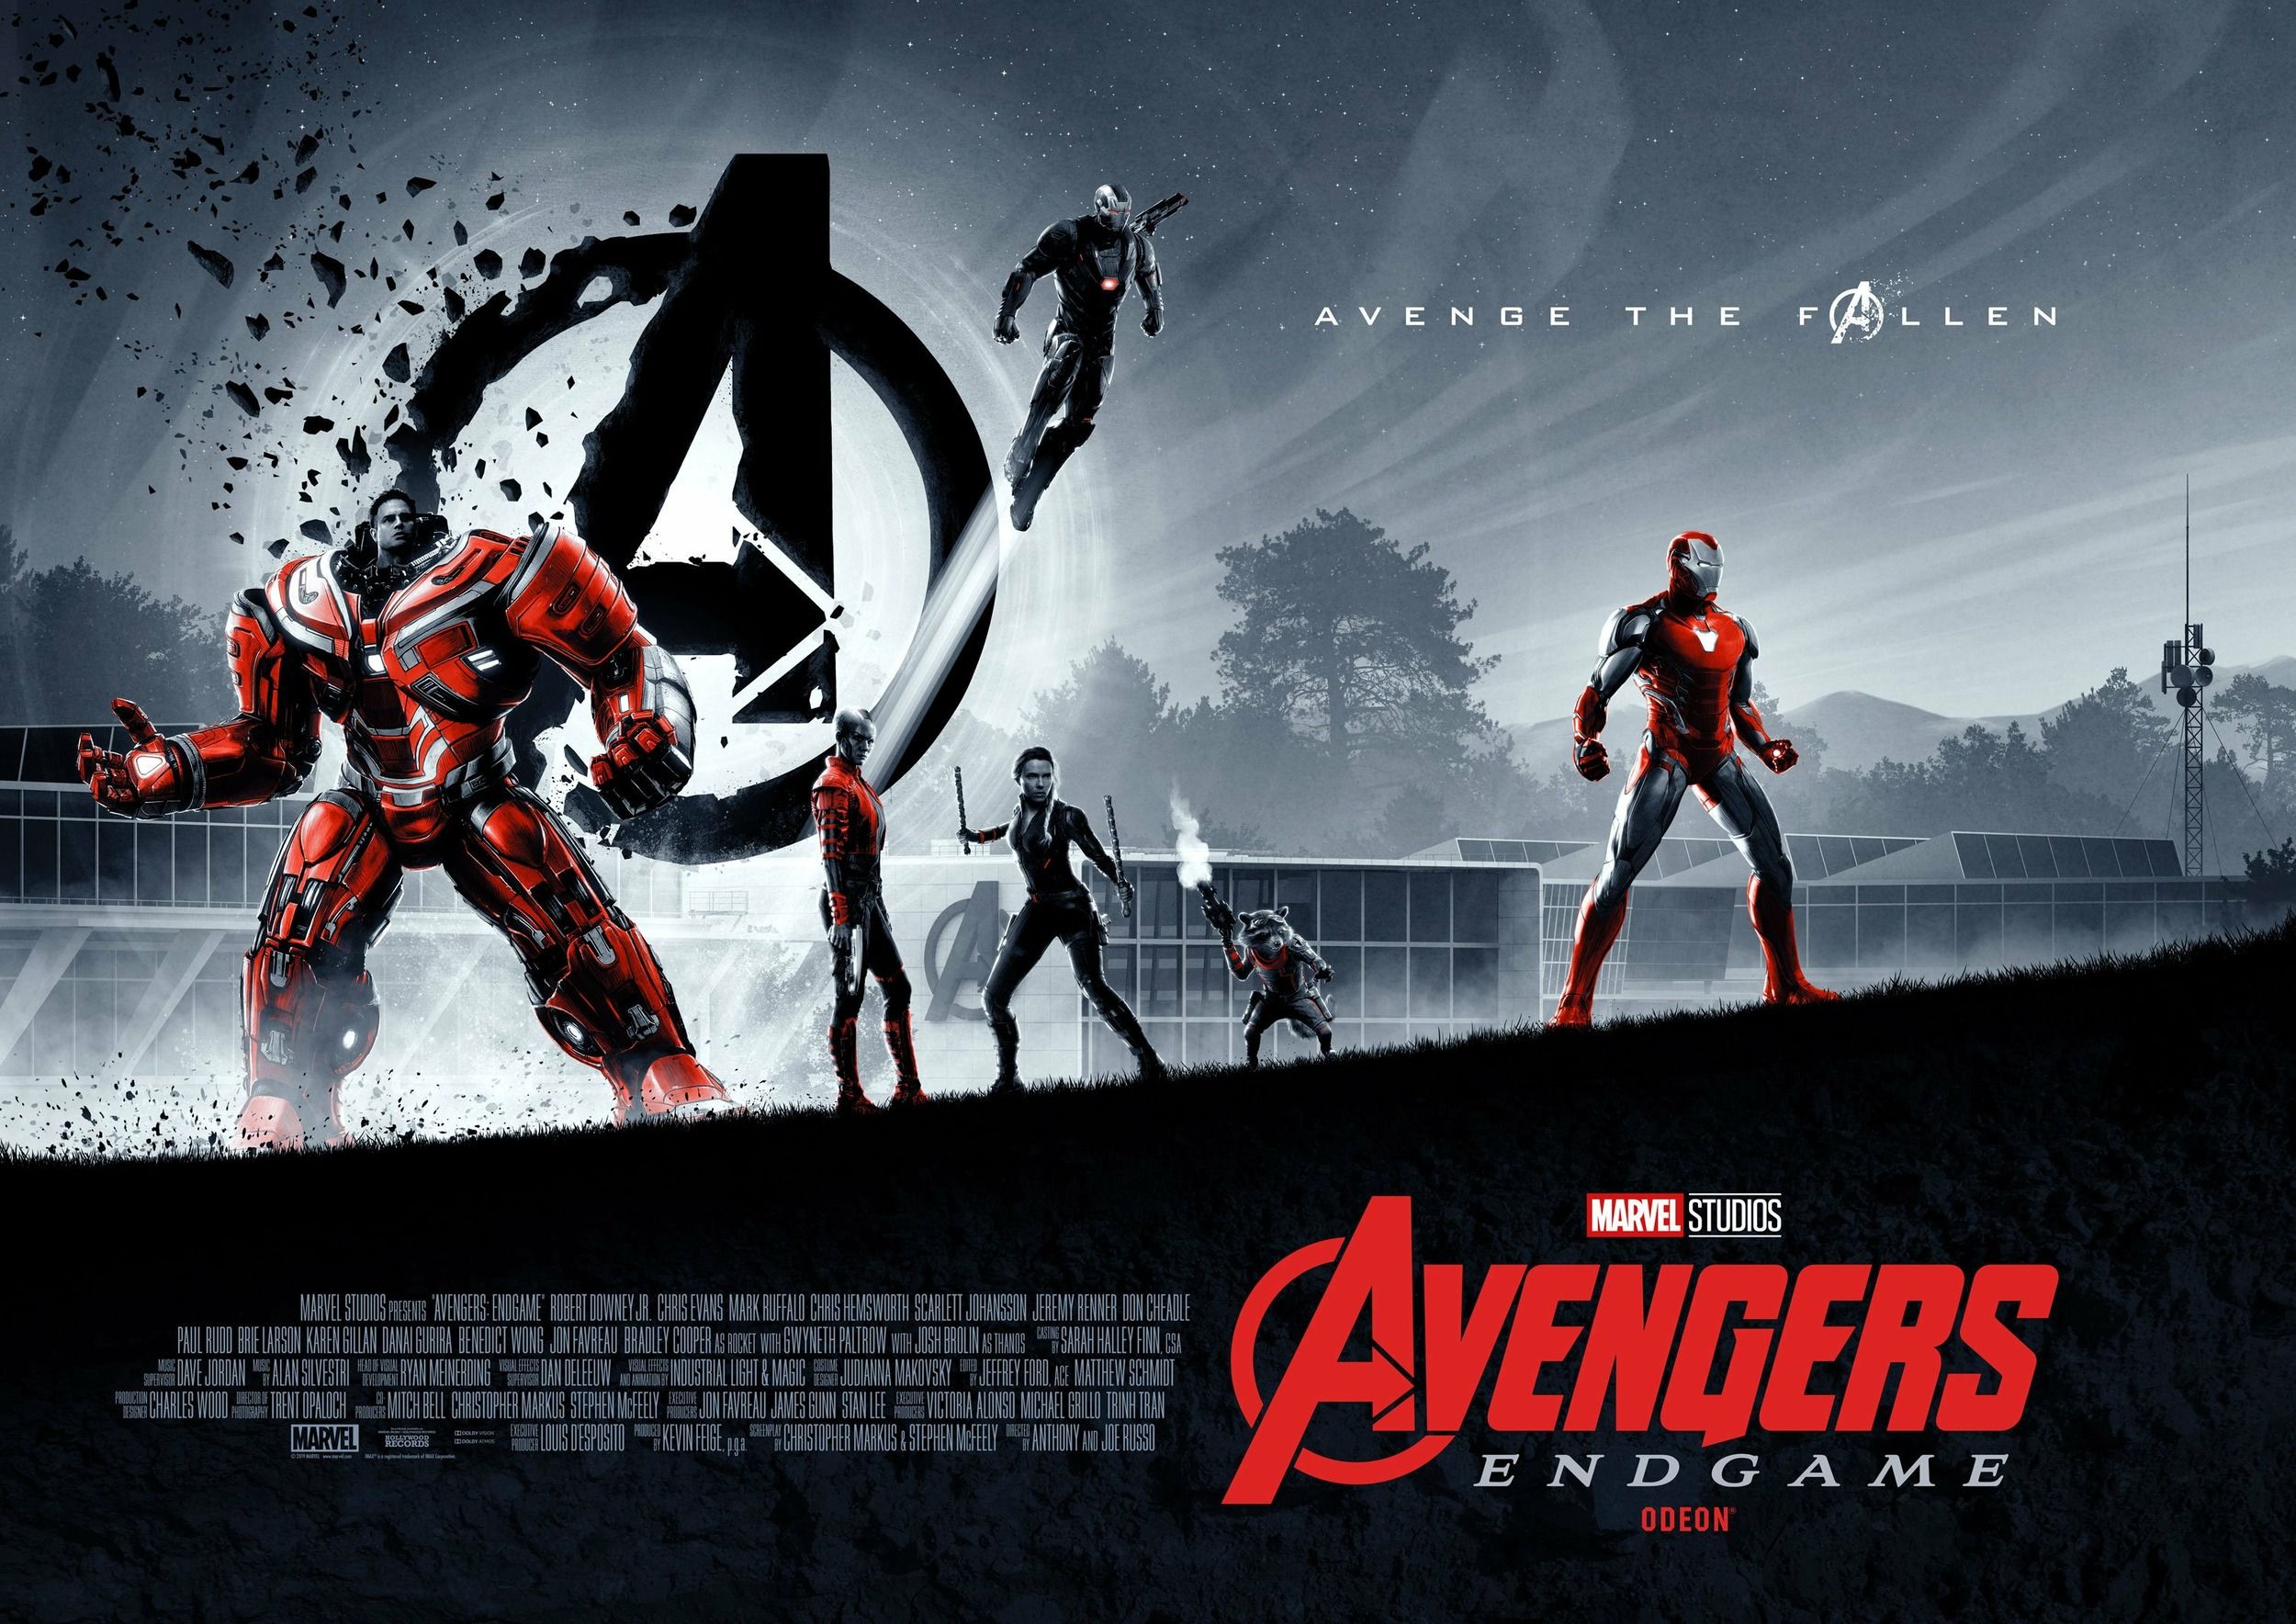 Avengers Endgame Odeon poster #2